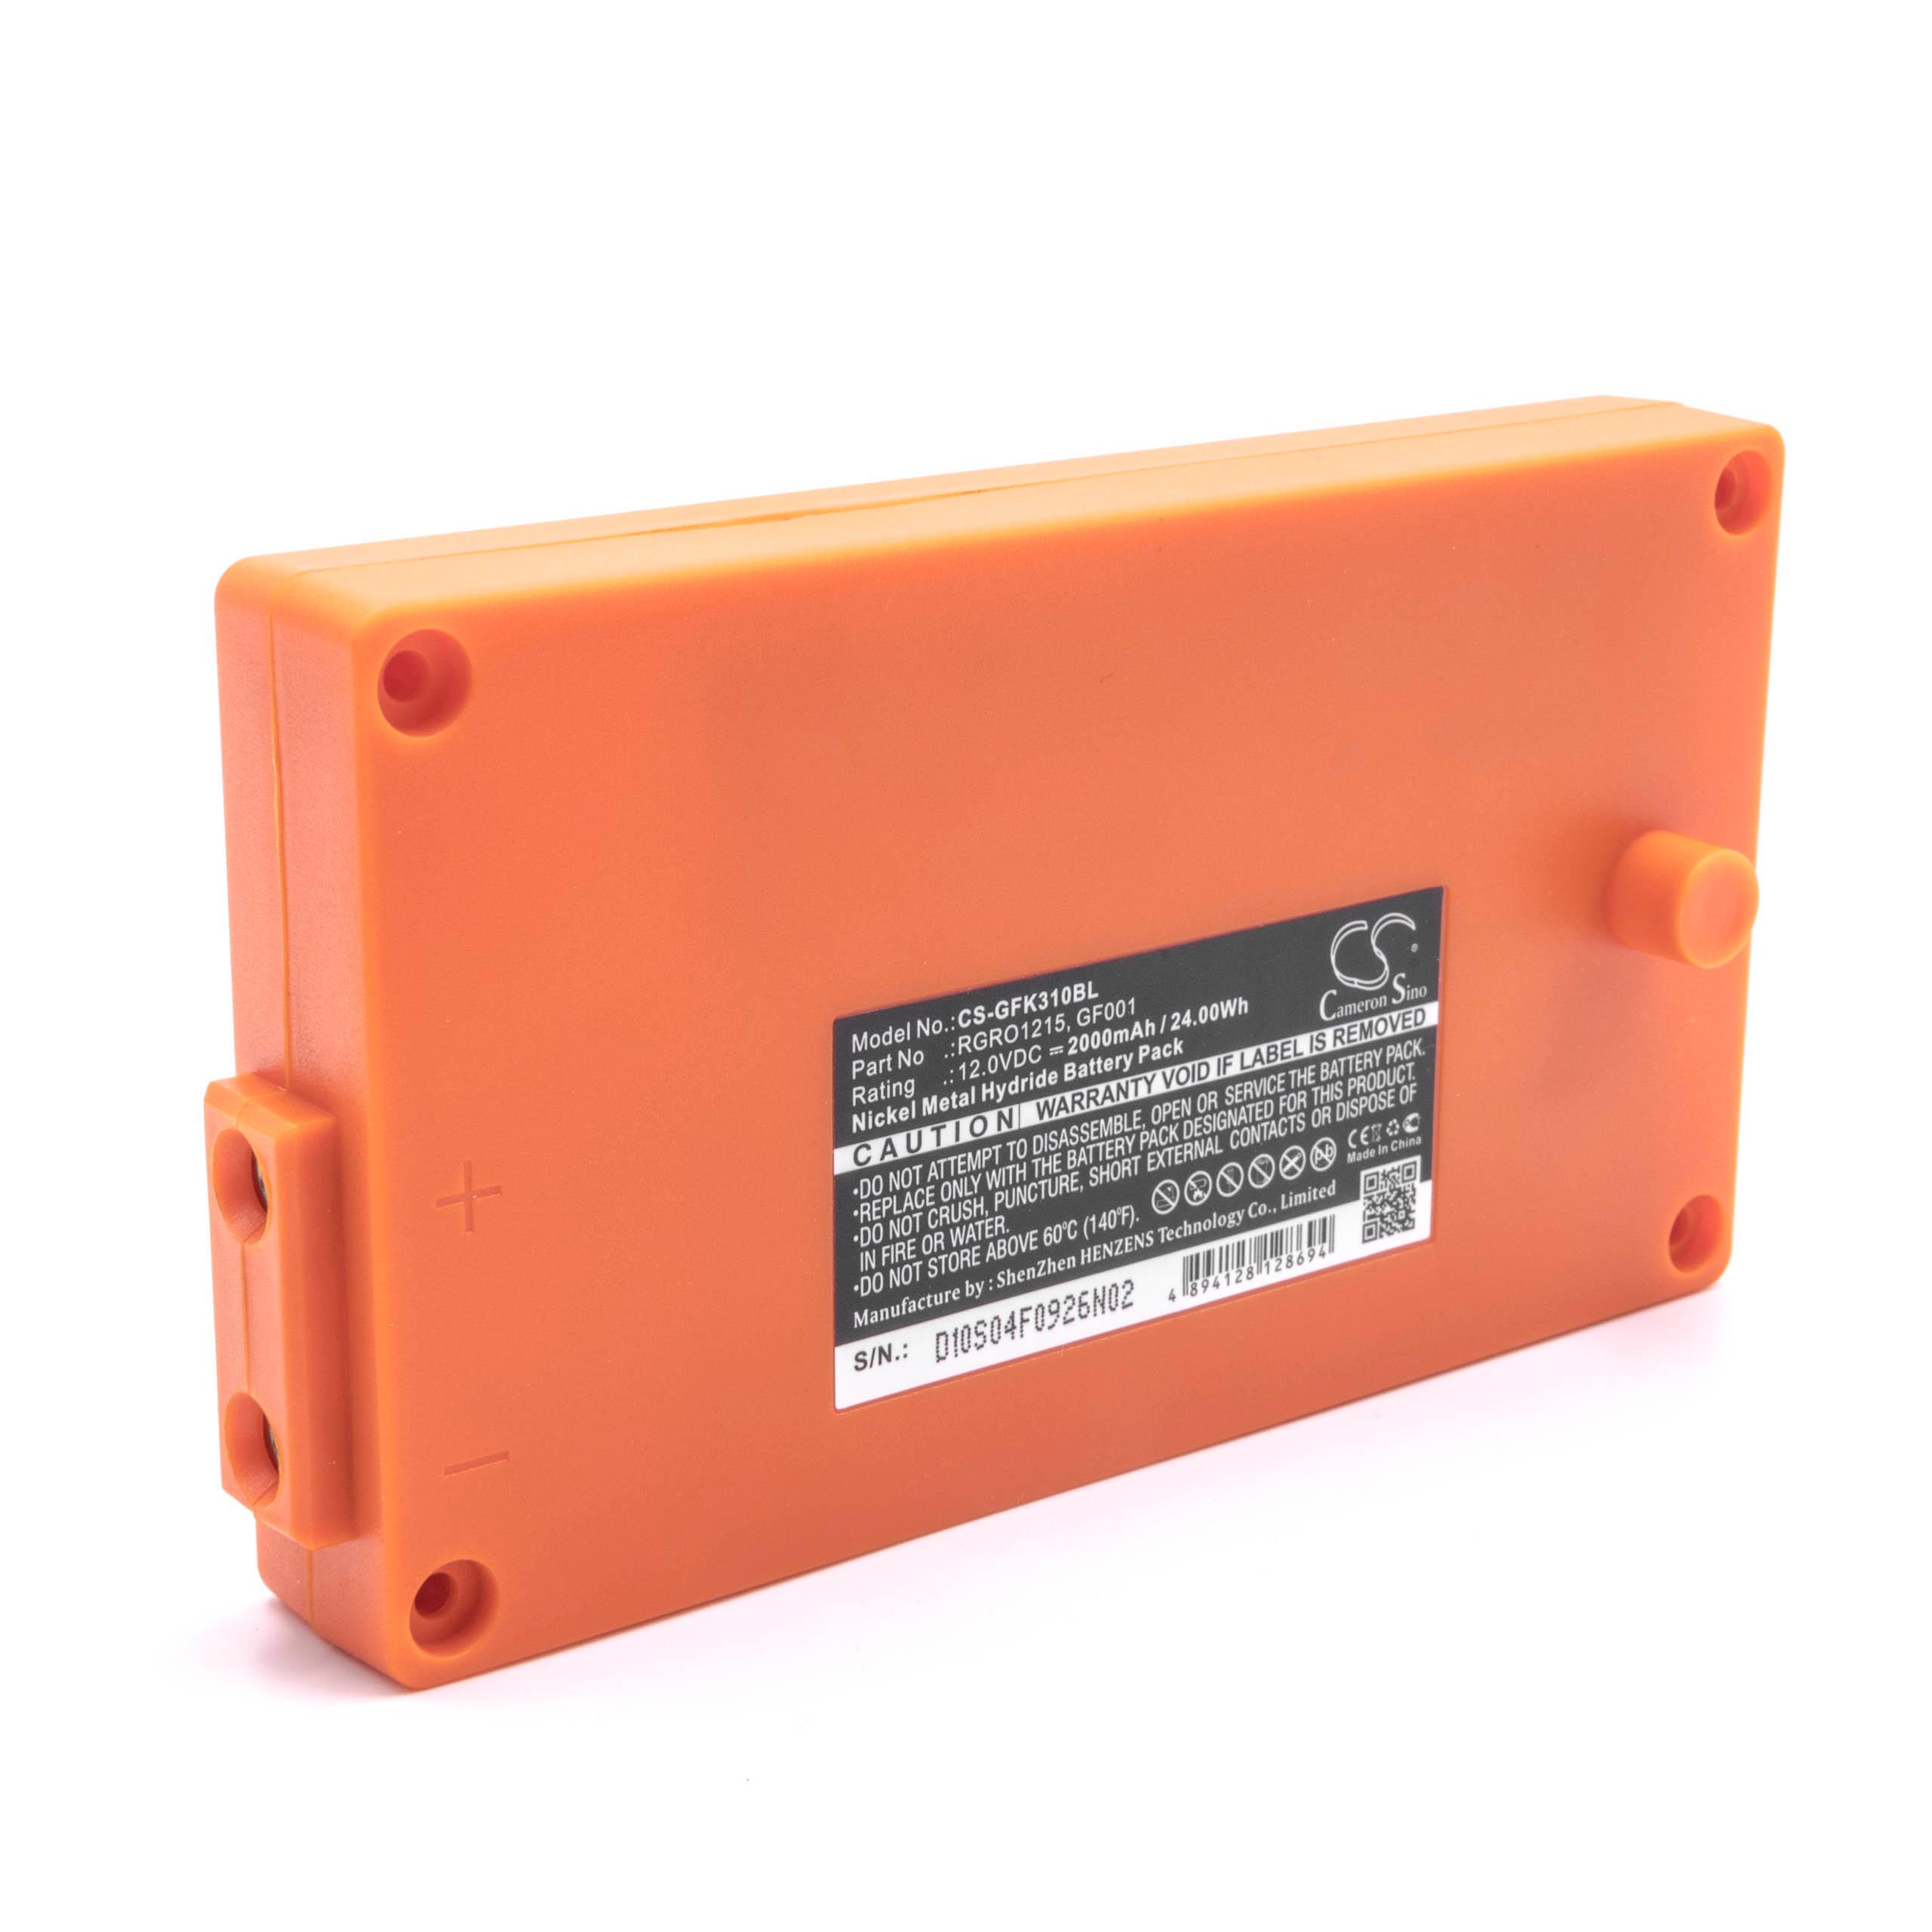 Batterie remplace Gross Funk GF001, 738010957, 100-000-134 pour télécomande industrielle - 2000mAh 12V NiMH